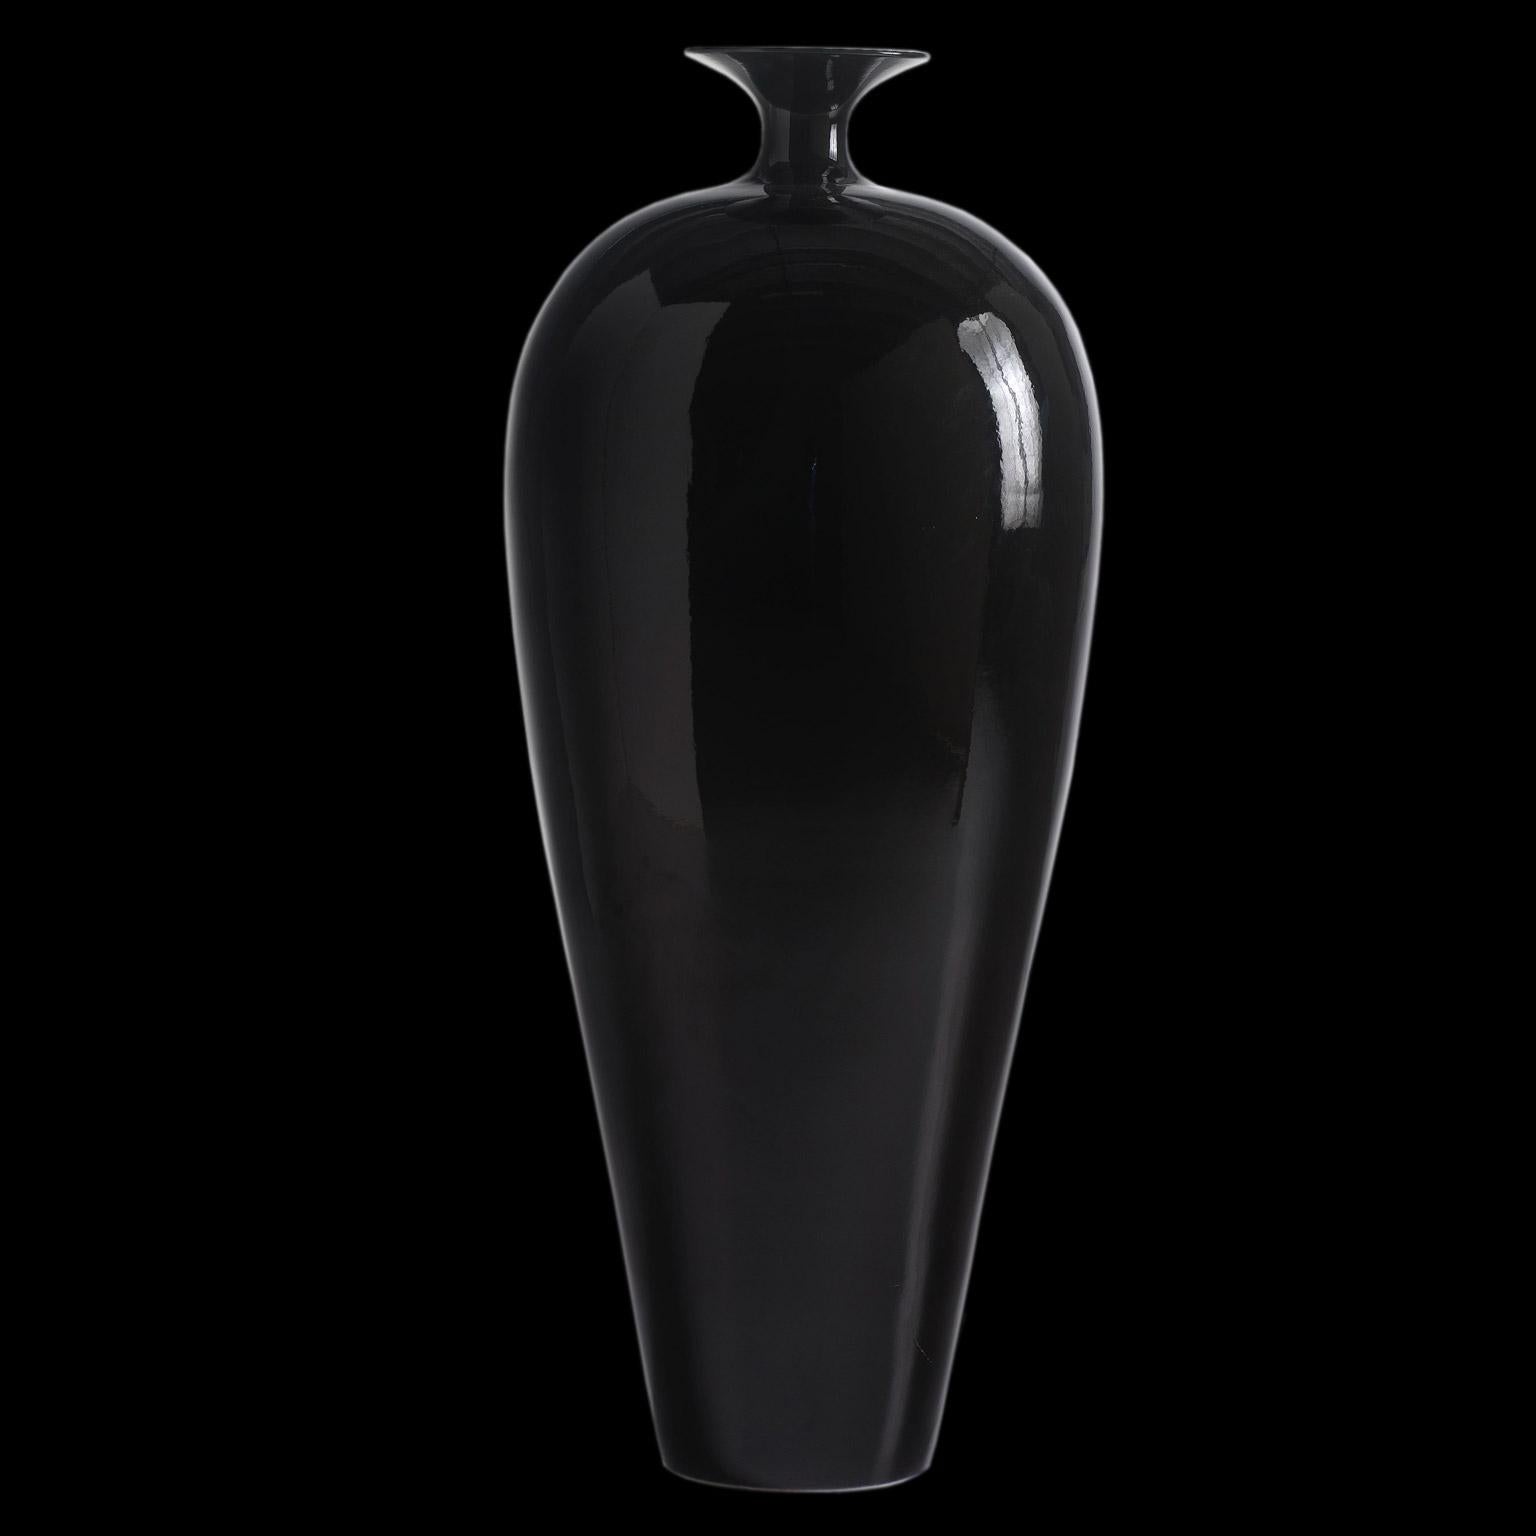 Ceramic vase DOLLY black glazed finished

cod. BD002
Measures: H. 125.0 cm. - Dm. 53.0 cm.